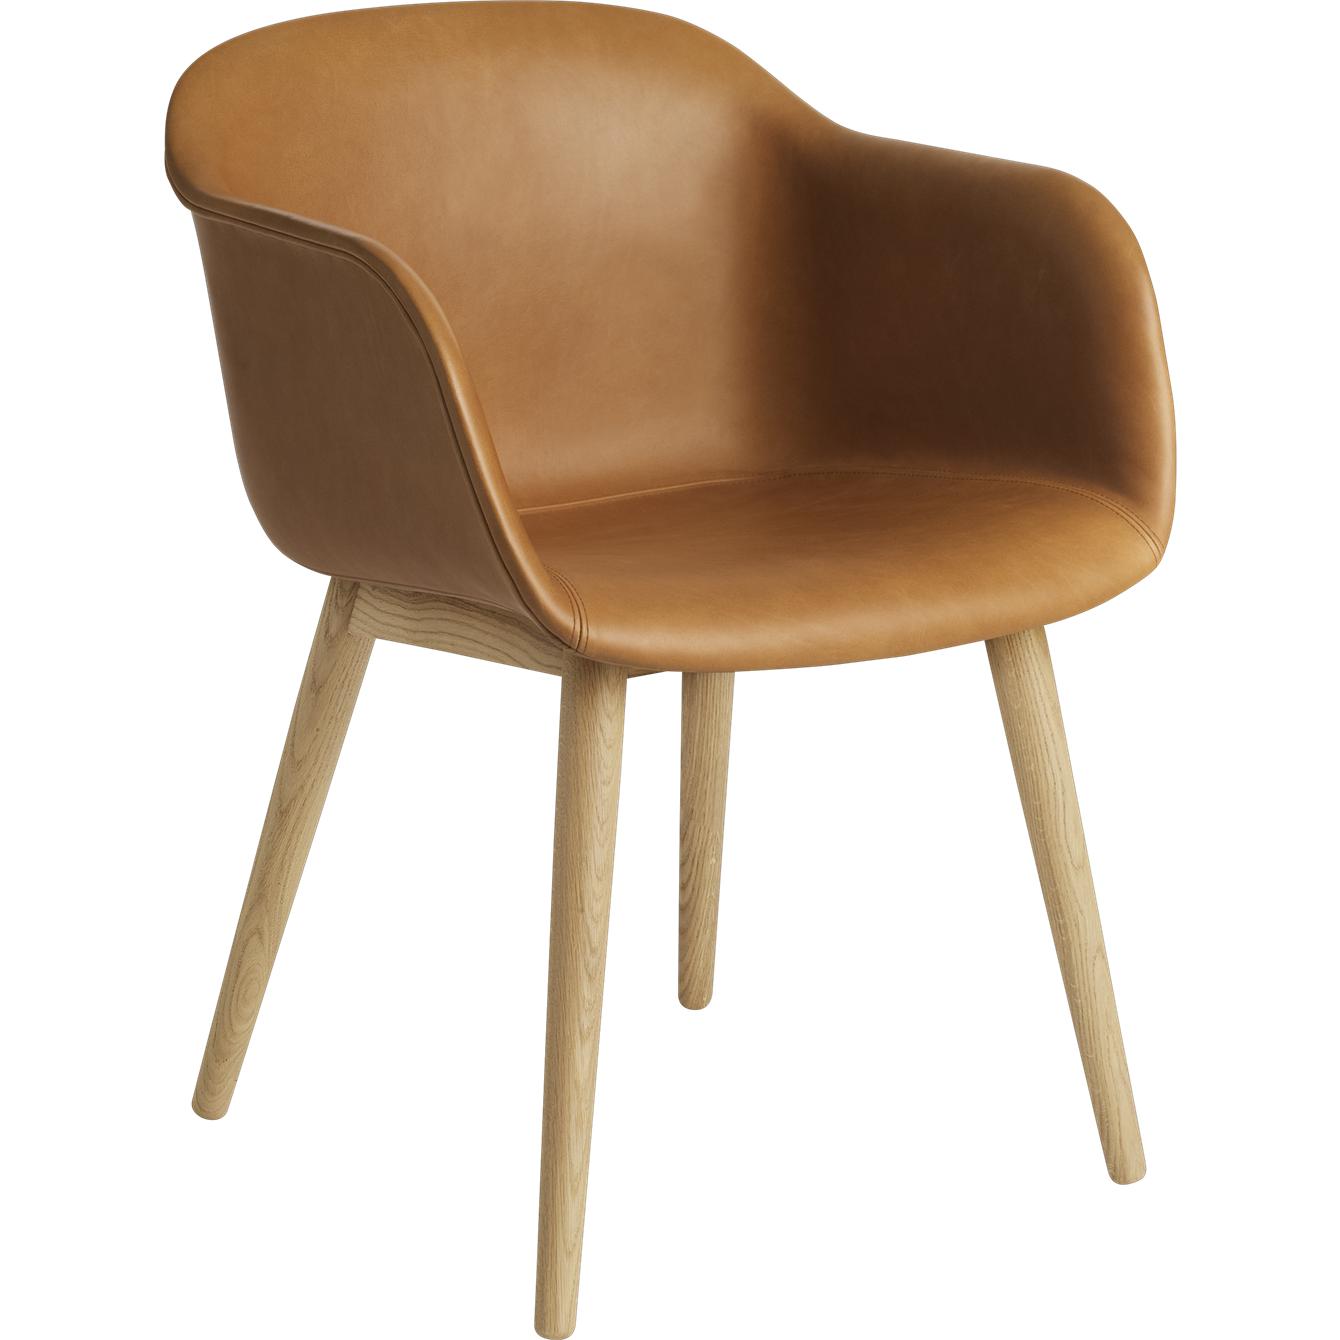 Base de bois de fauteuil en fibre Muuto, siège en cuir, cuir en chêne cognac